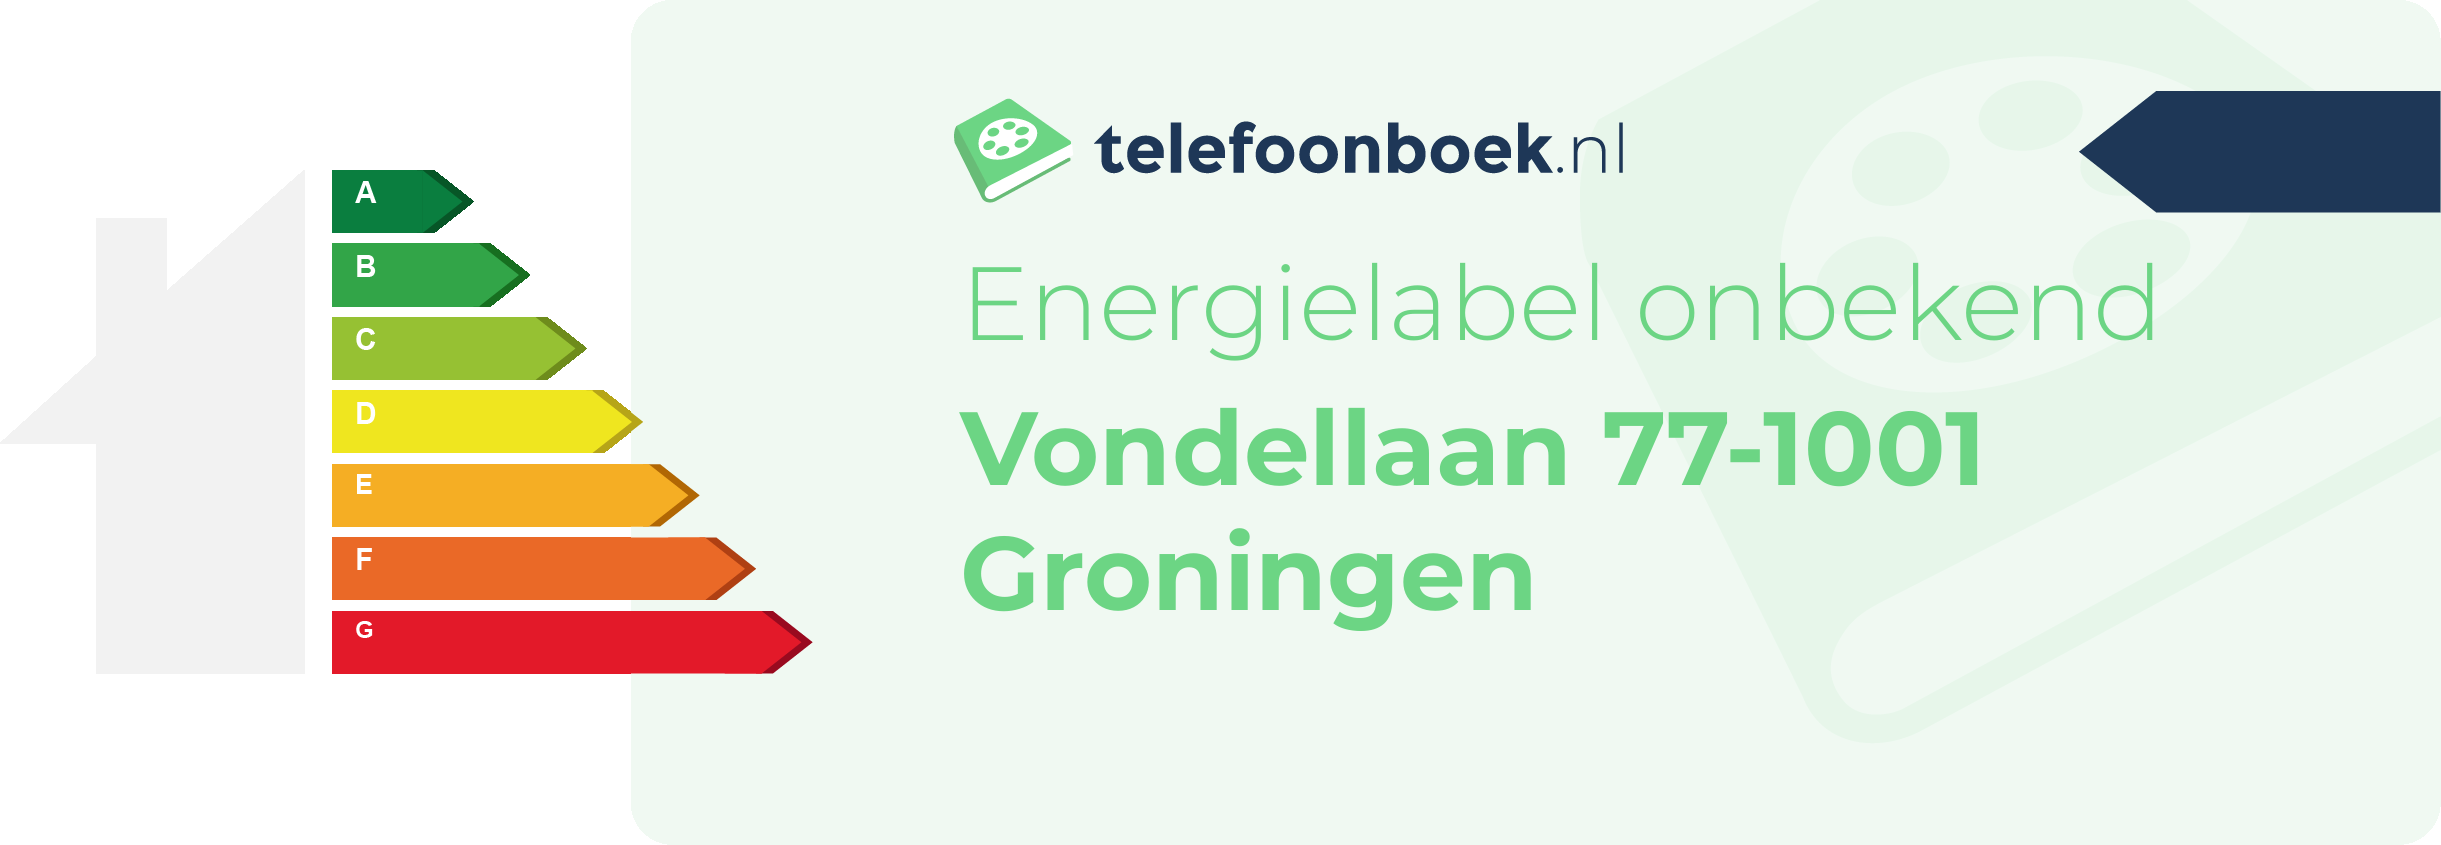 Energielabel Vondellaan 77-1001 Groningen